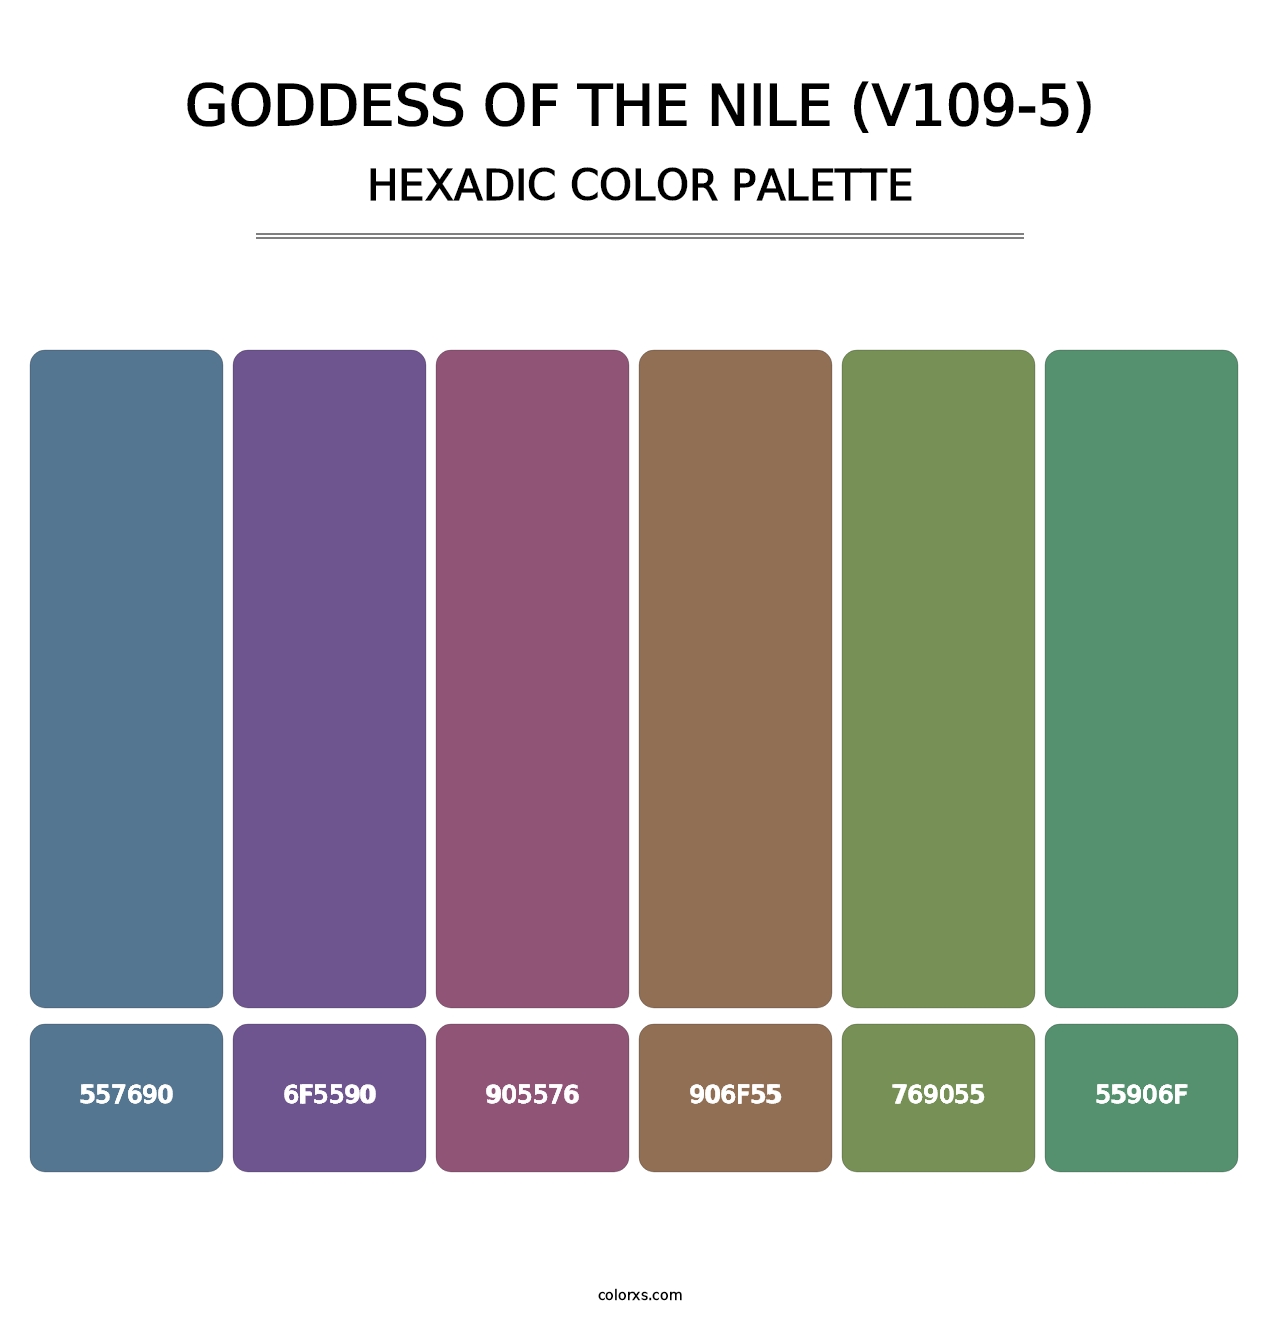 Goddess of the Nile (V109-5) - Hexadic Color Palette